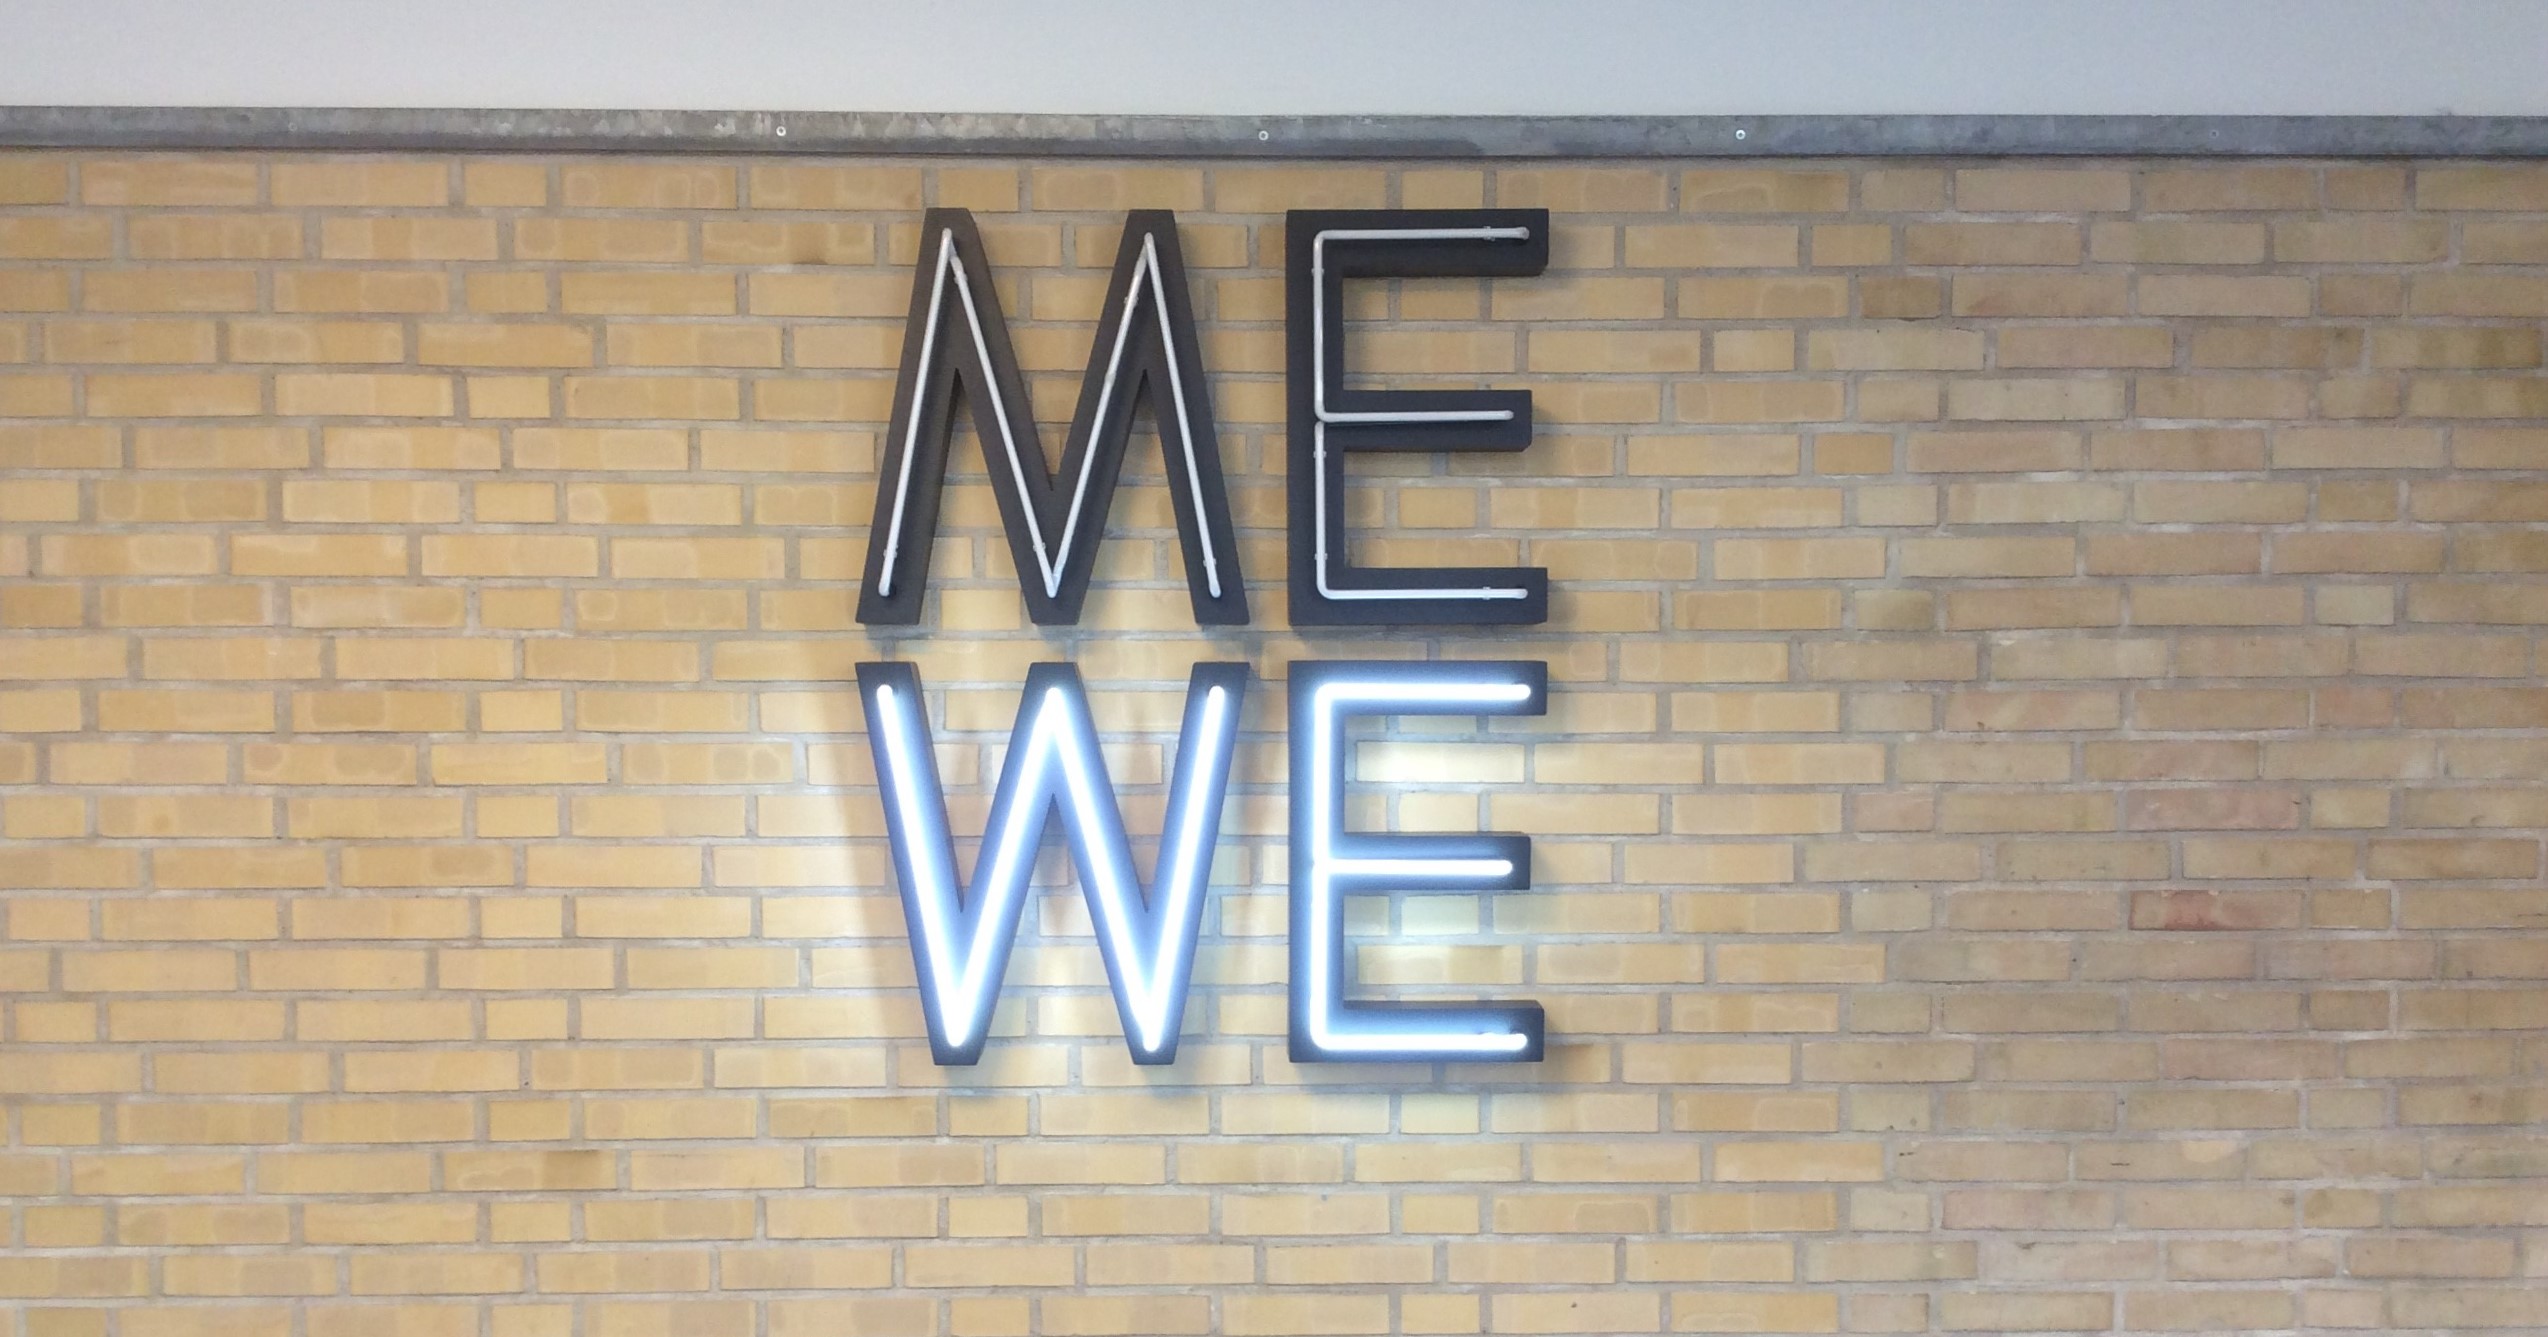 Gymnasiet. Kunst på 1. sal med bogstaverne ME - WE i neon.